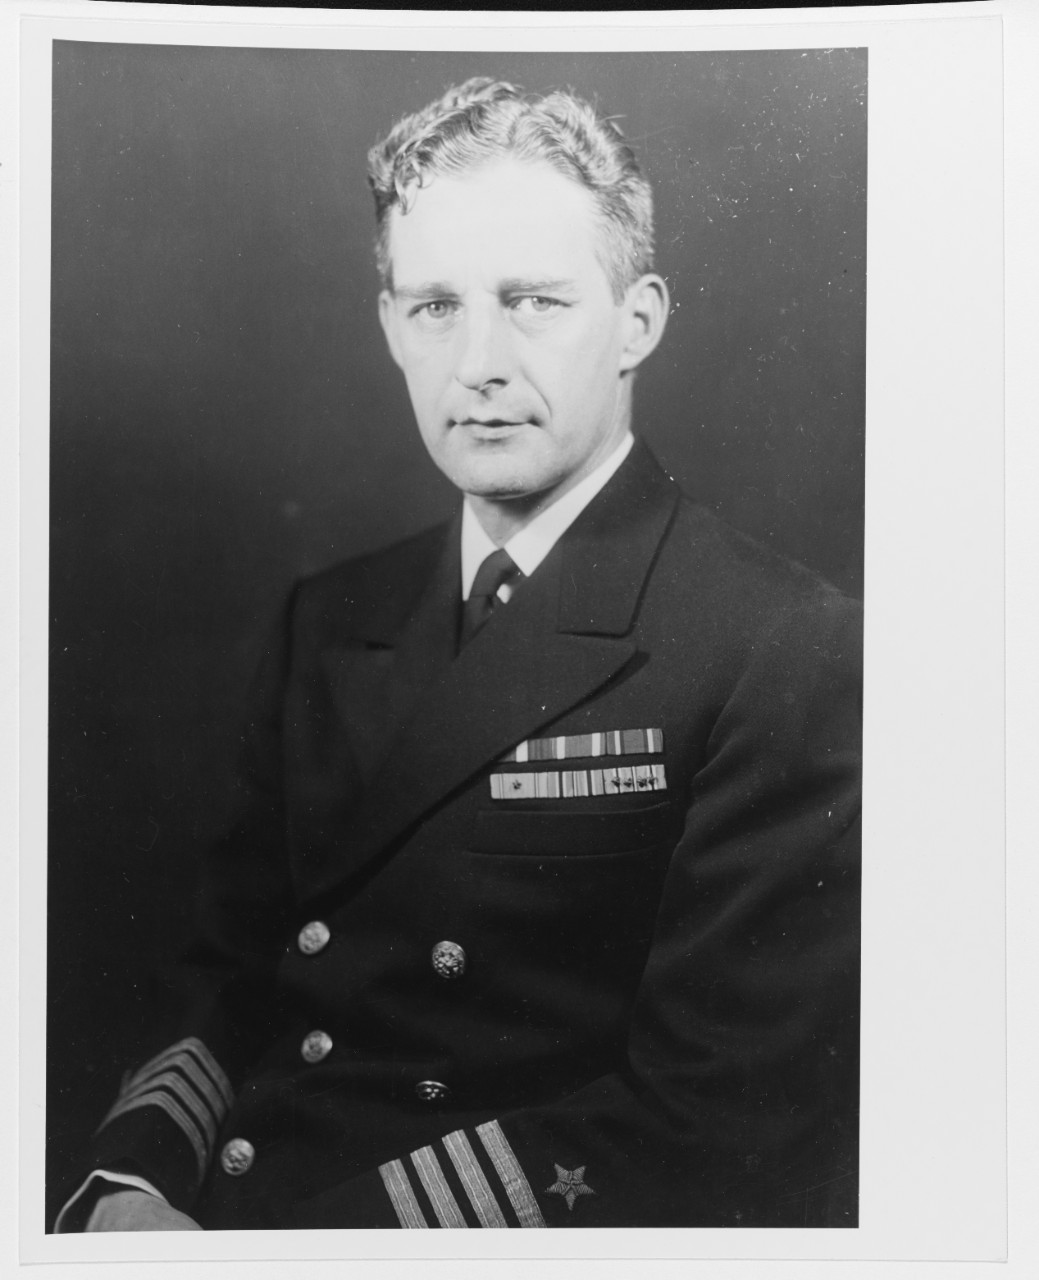 Frederick Moosbrugger Captain, USN